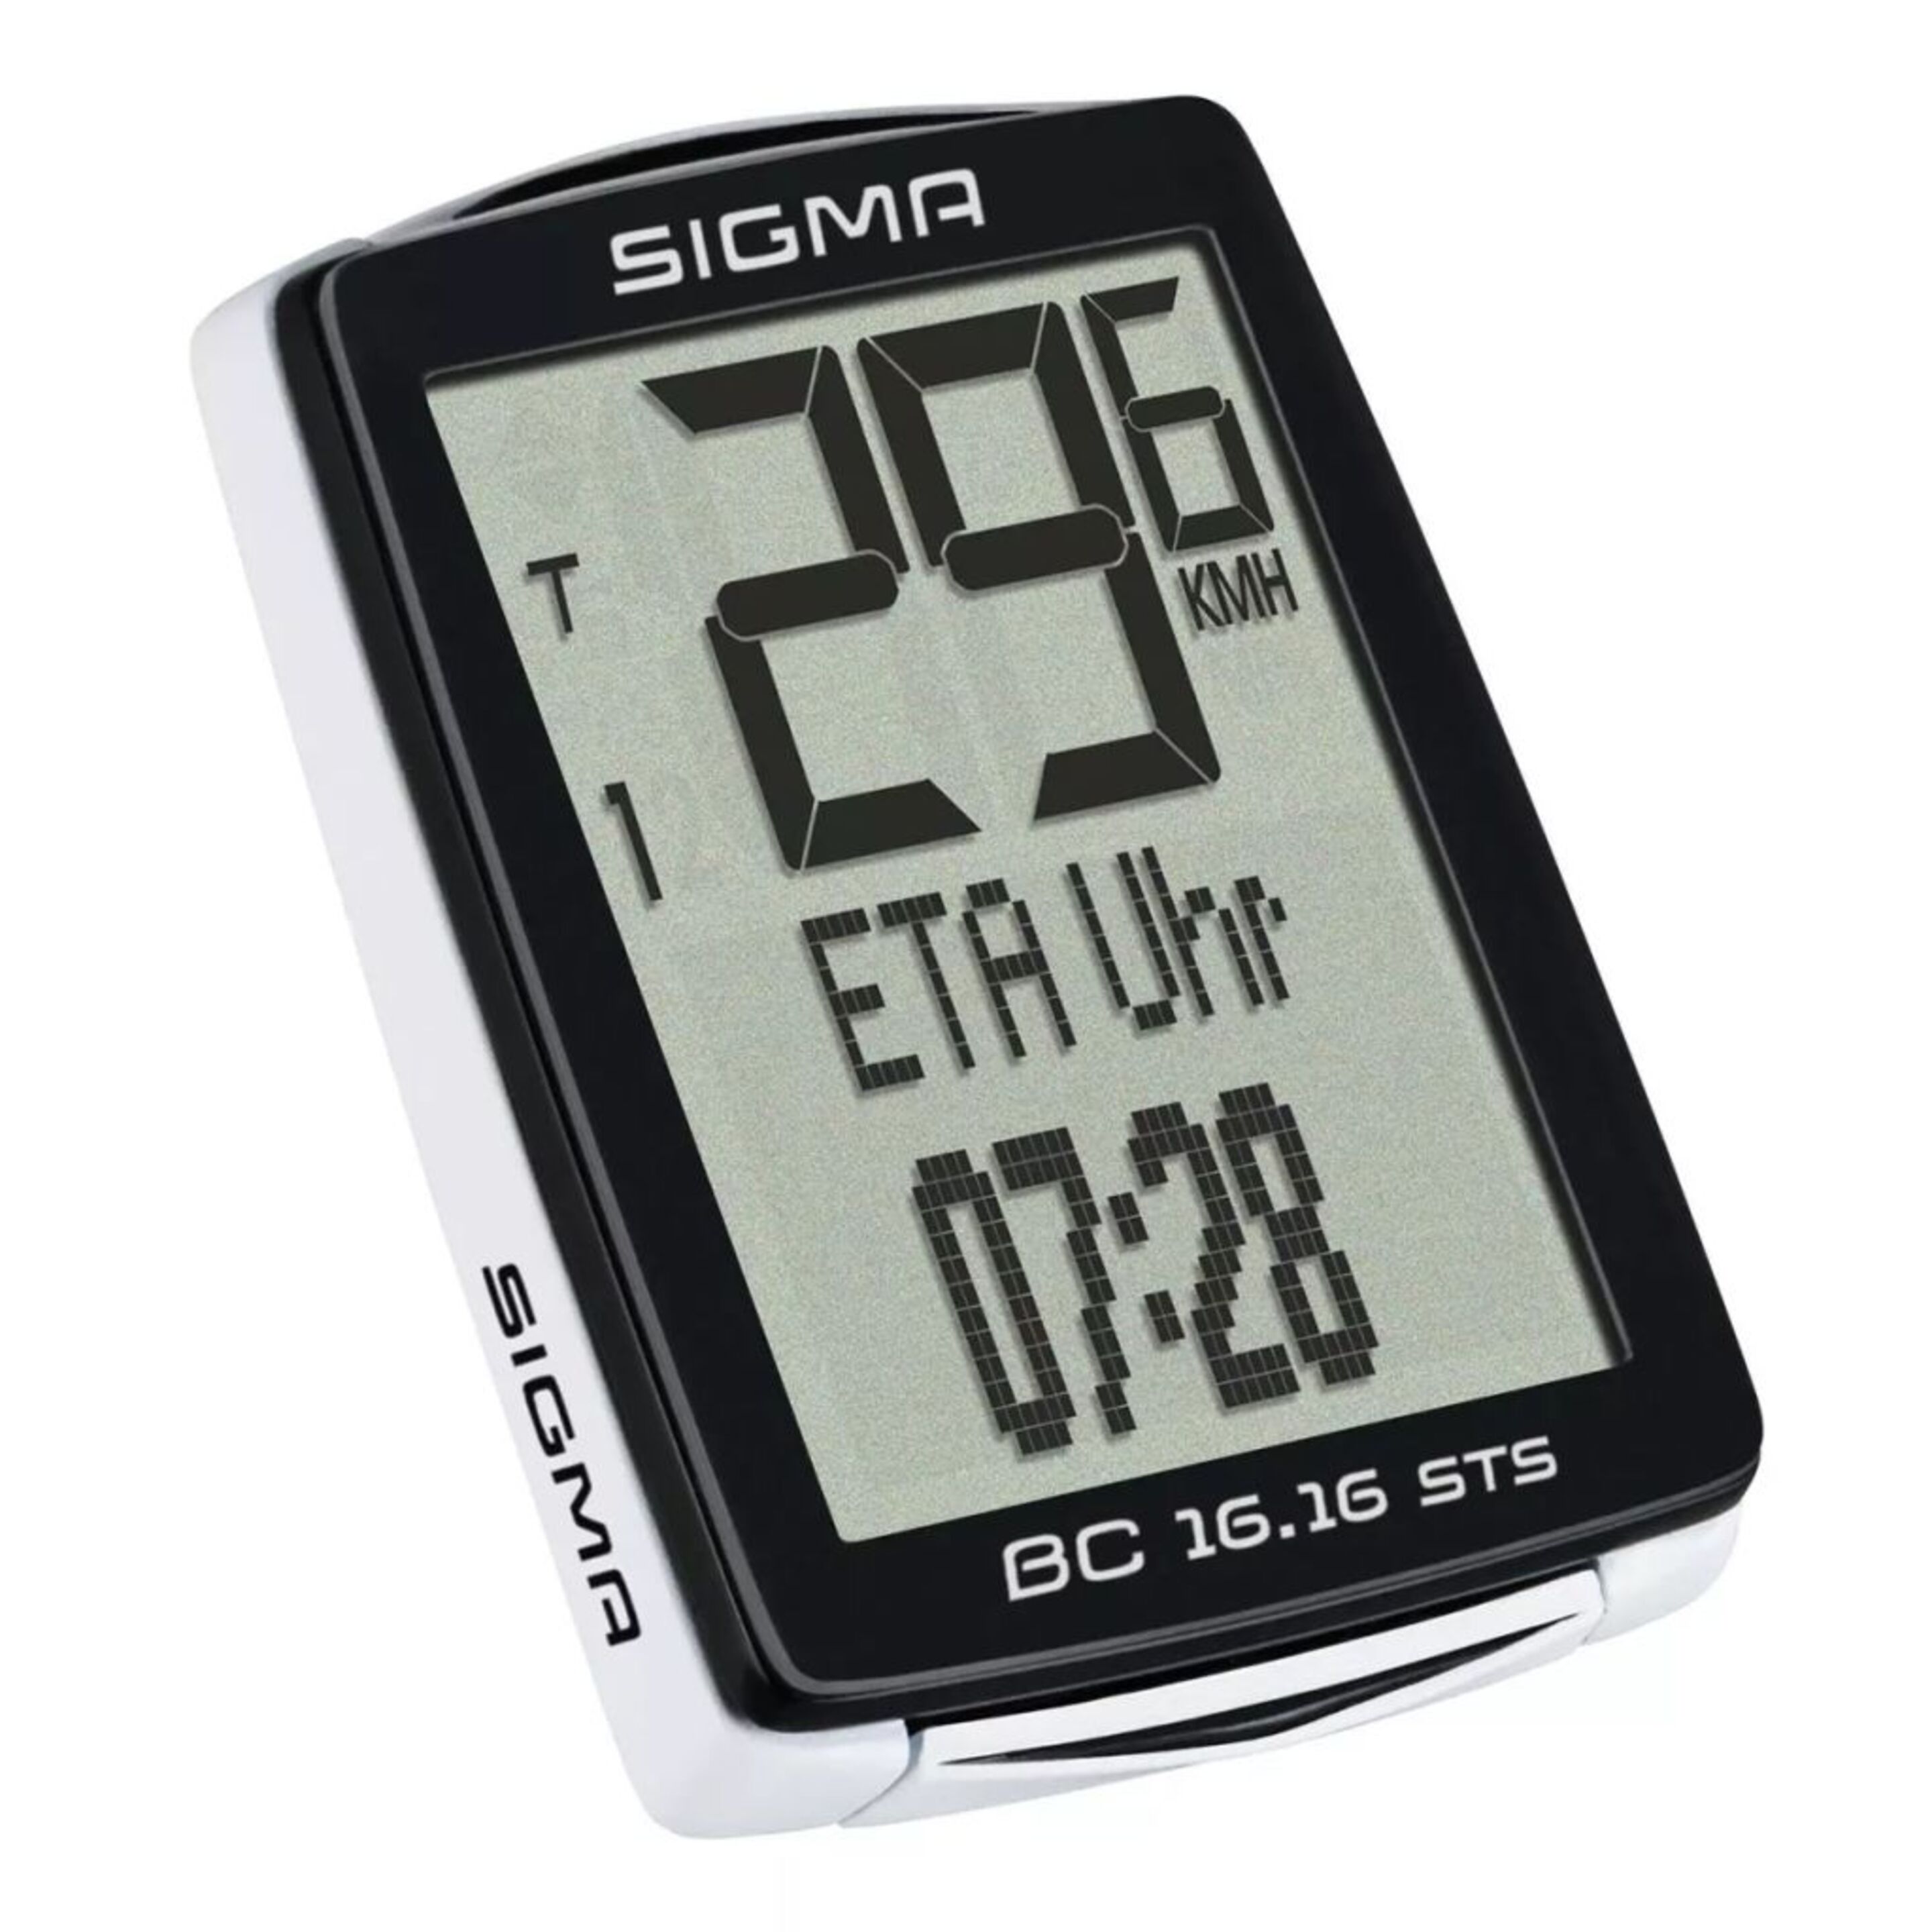 Cuentakilómetros Sigma Bc 16.16 Sts Cadencia